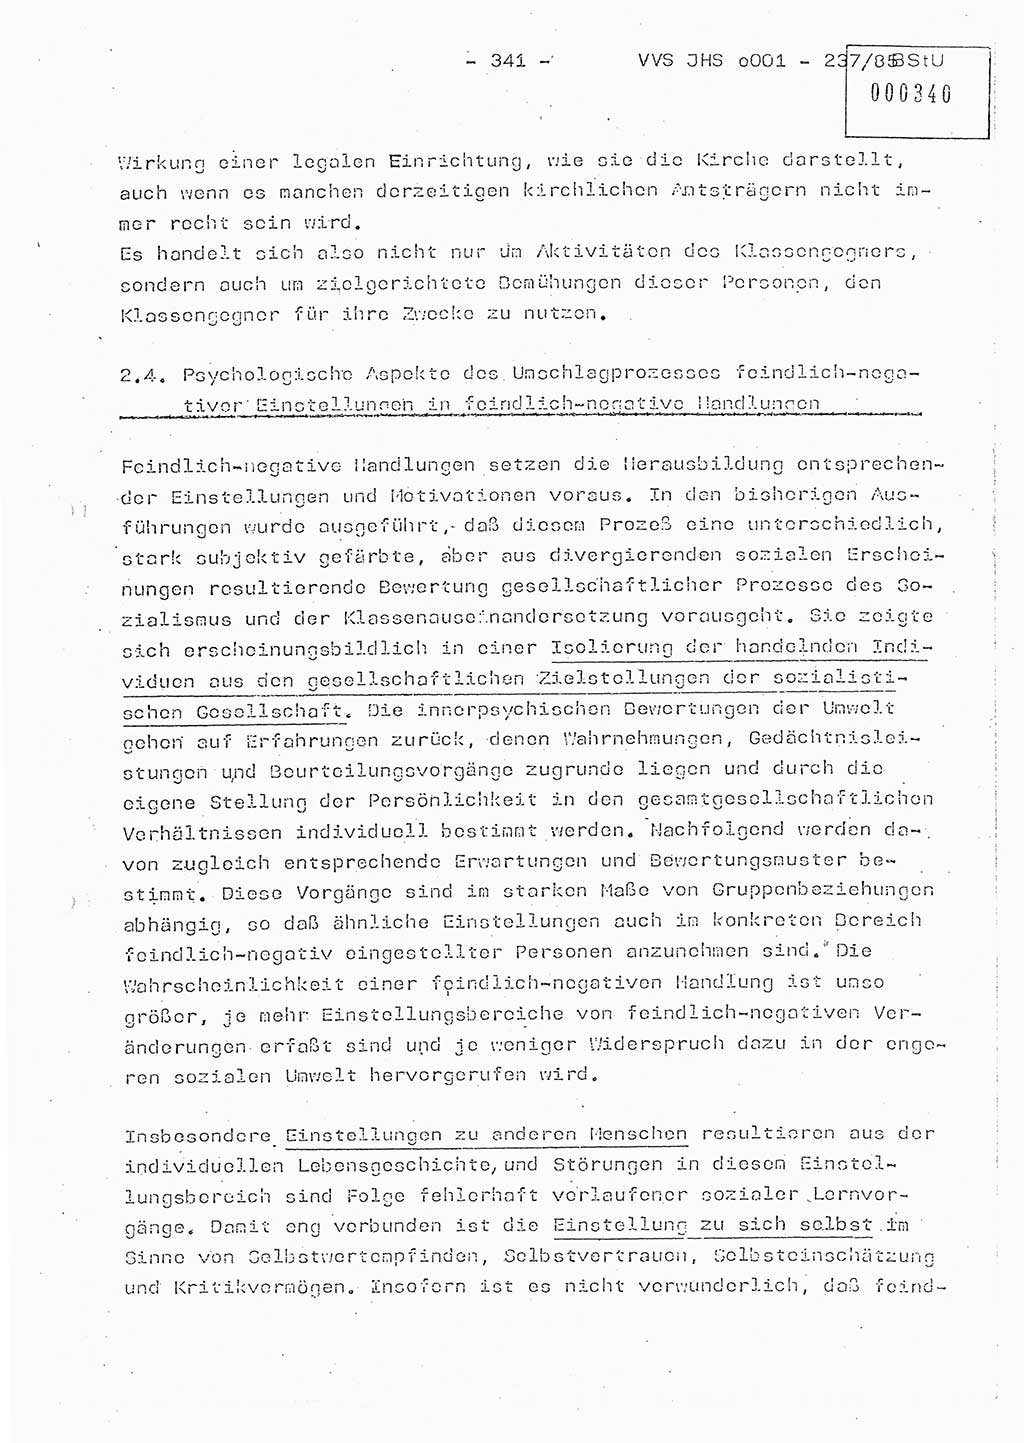 Dissertation Oberstleutnant Peter Jakulski (JHS), Oberstleutnat Christian Rudolph (HA Ⅸ), Major Horst Böttger (ZMD), Major Wolfgang Grüneberg (JHS), Major Albert Meutsch (JHS), Ministerium für Staatssicherheit (MfS) [Deutsche Demokratische Republik (DDR)], Juristische Hochschule (JHS), Vertrauliche Verschlußsache (VVS) o001-237/85, Potsdam 1985, Seite 341 (Diss. MfS DDR JHS VVS o001-237/85 1985, S. 341)